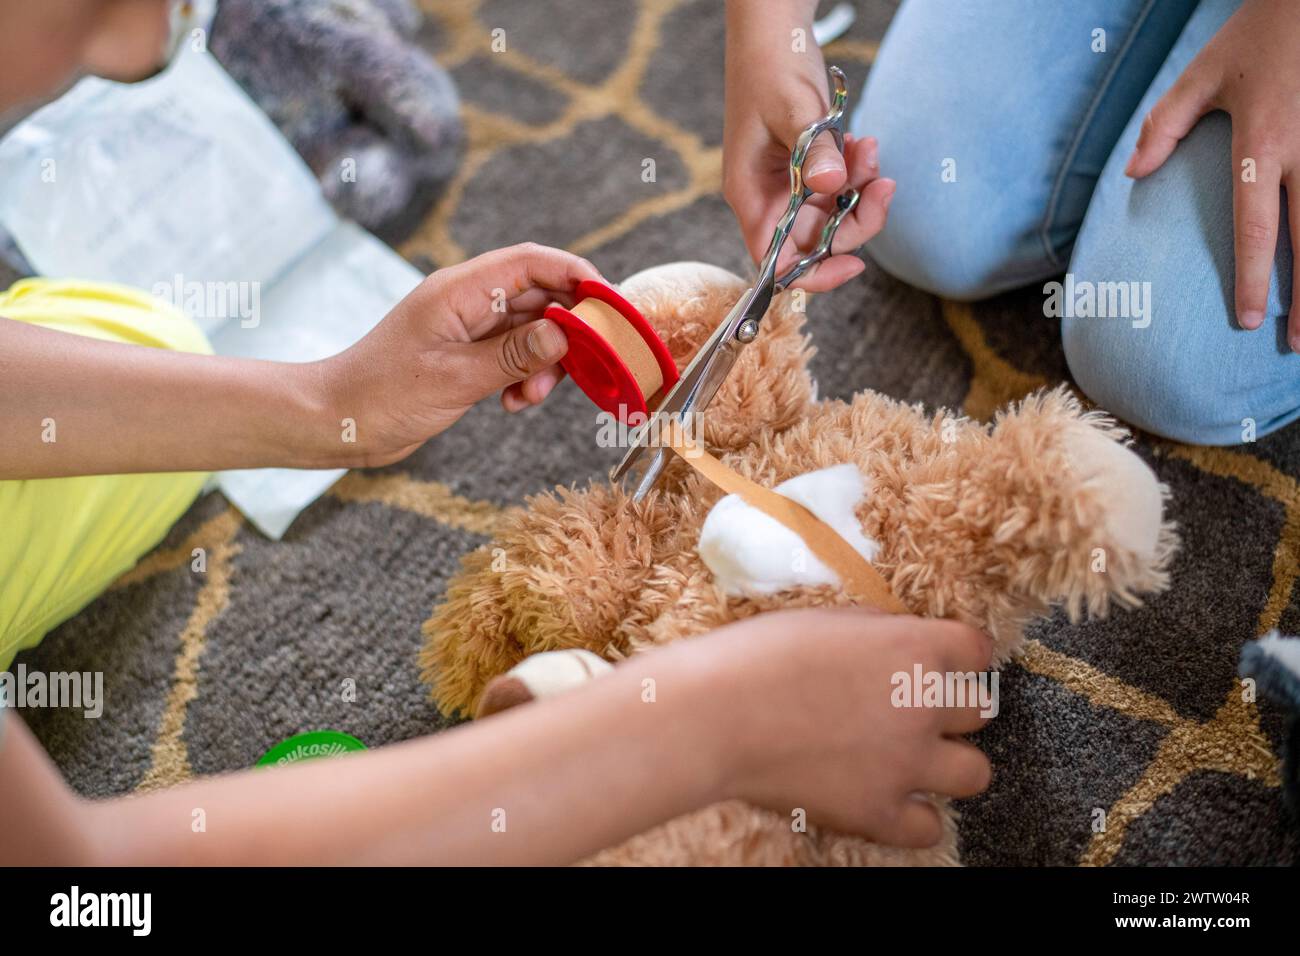 Giocare con il medico le mani di Un bambino usando le forbici giocattolo su un orsacchiotto mentre gli altri lo guardano. Foto Stock